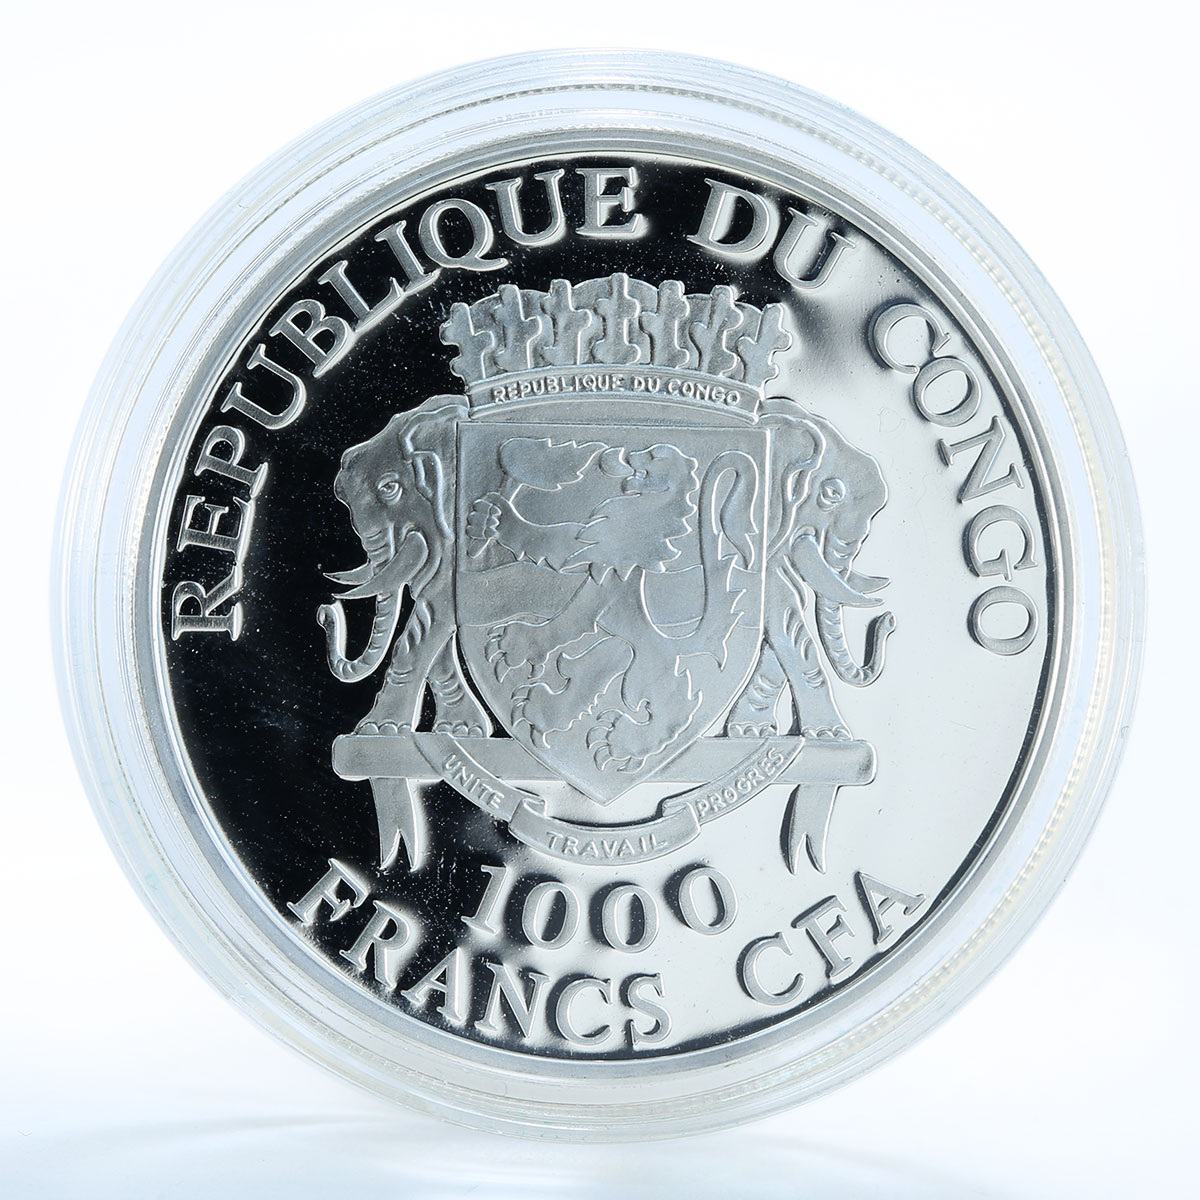 Congo 10 francs Michael Schumacher San Marino silver 2 oz coin 2007